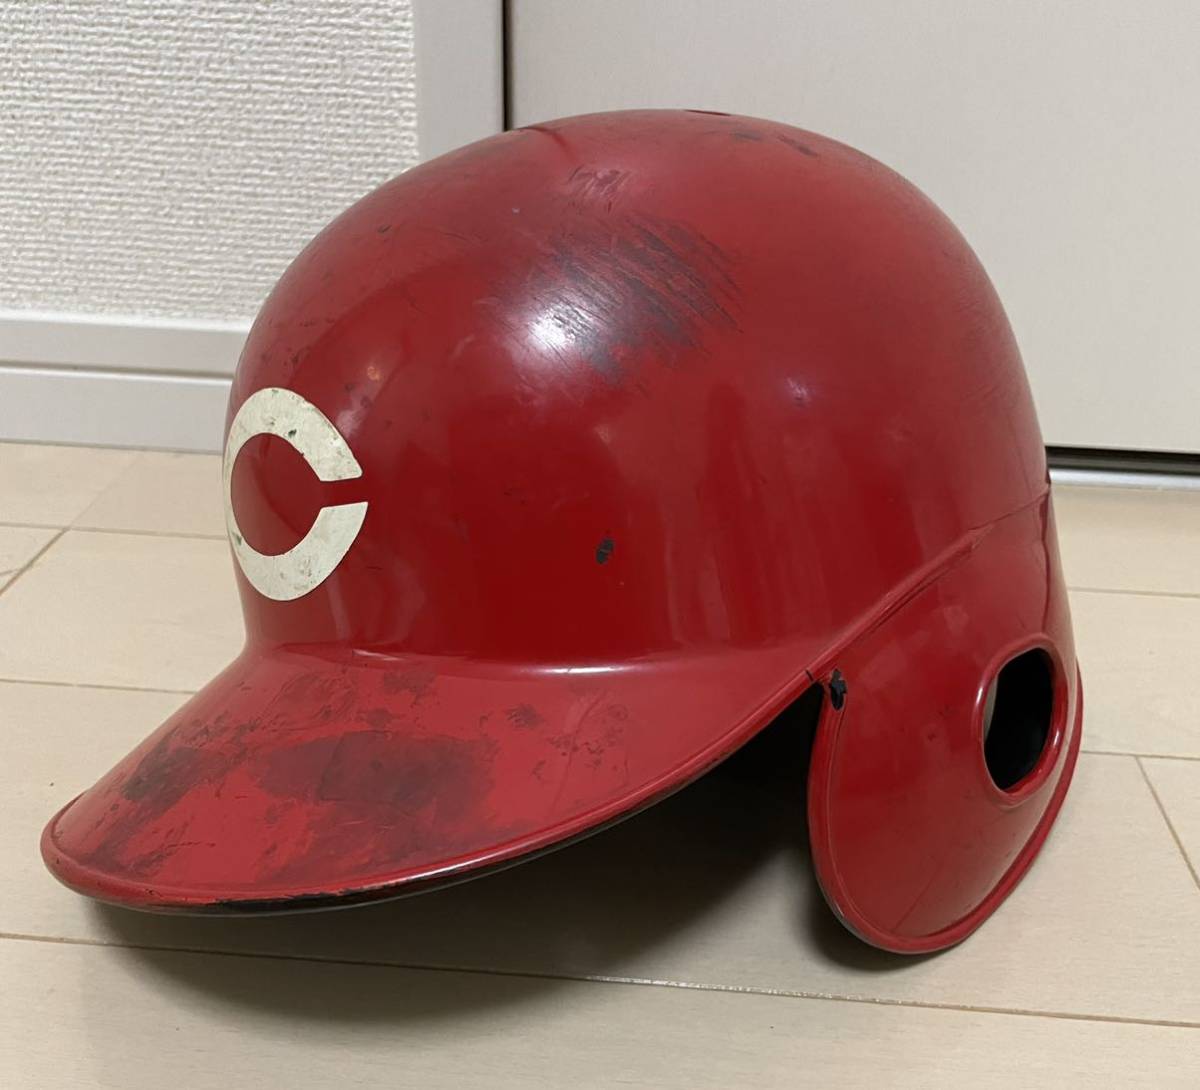 人気商品超目玉 目玉商品 広島東洋カープ プロ実使用ヘルメット 右打者 